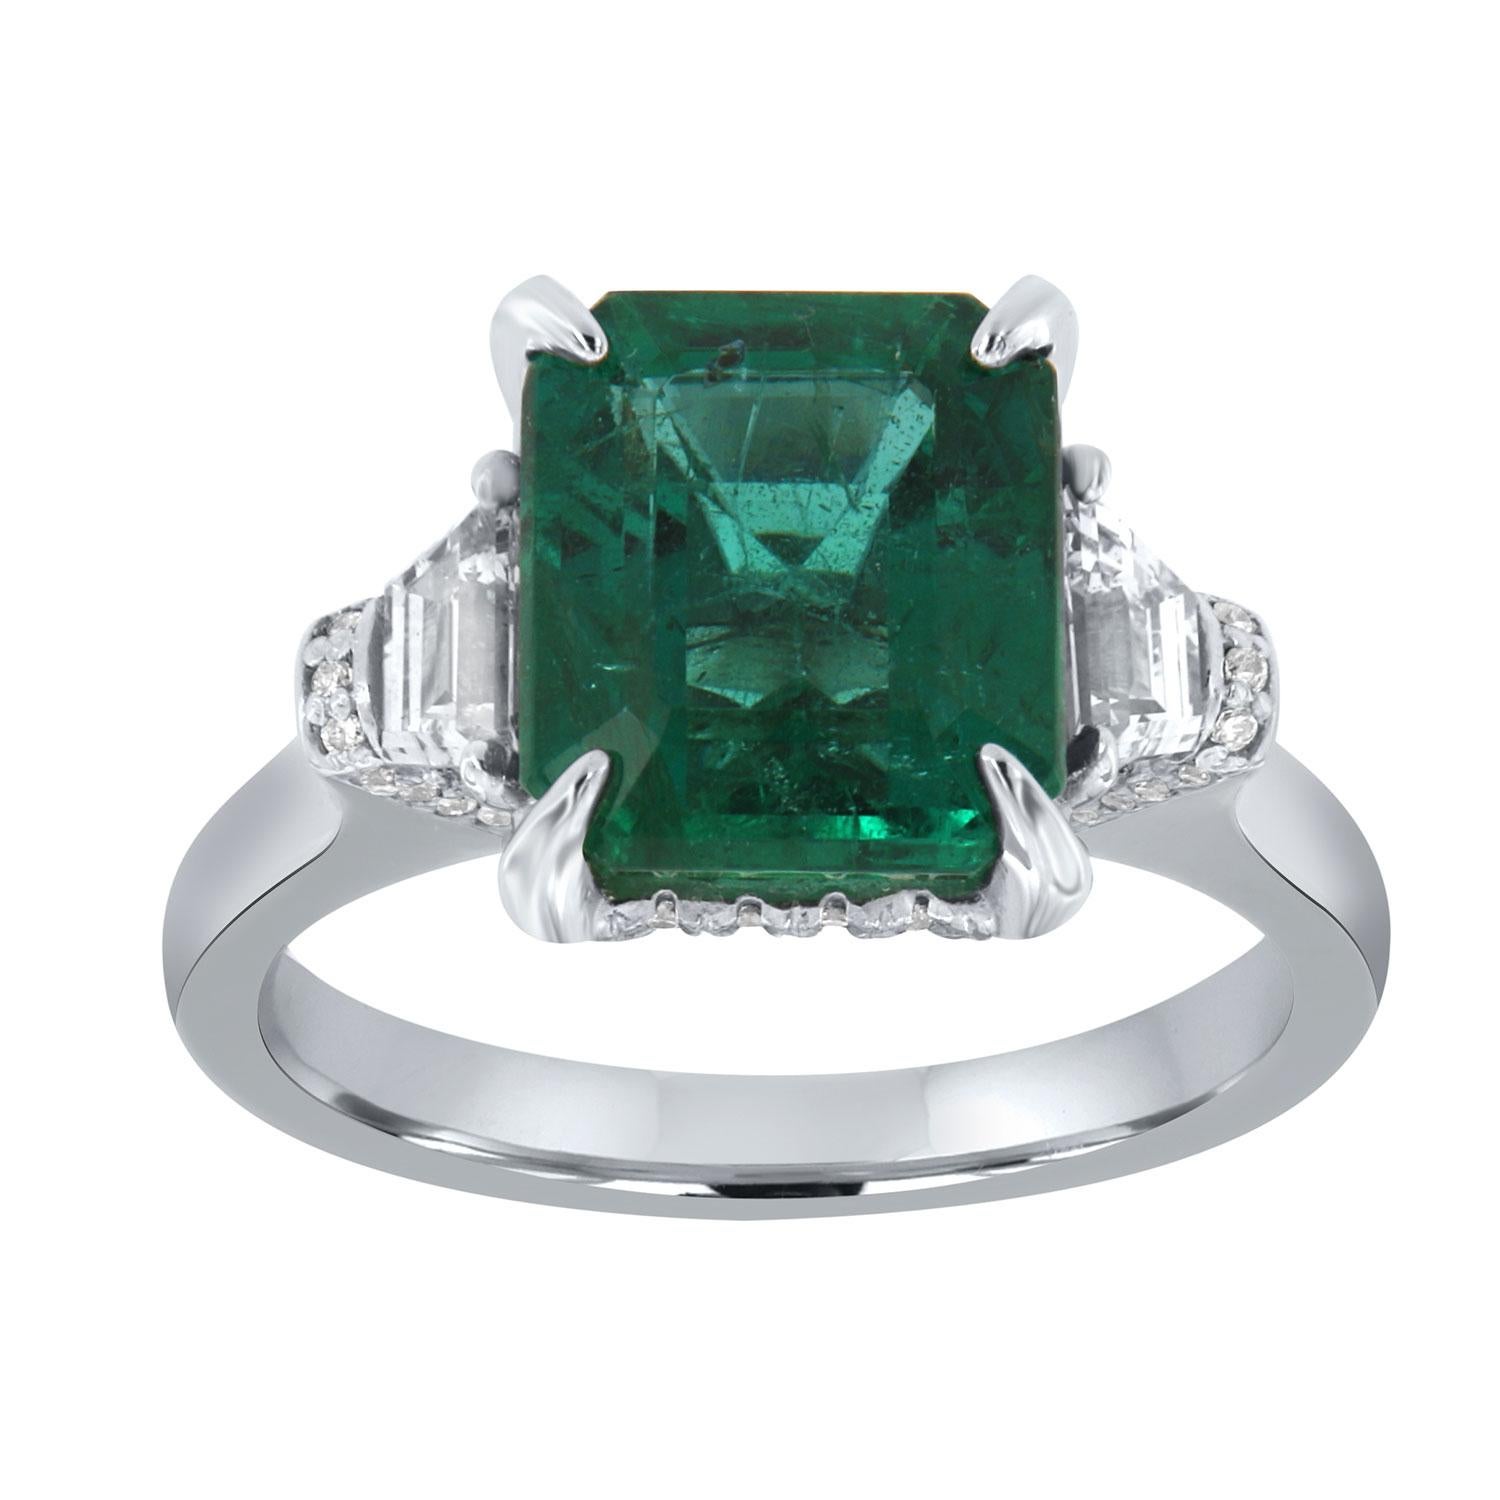 Bague en platine avec diamants et émeraude verte de 3,87 carats certifiée par le GIA